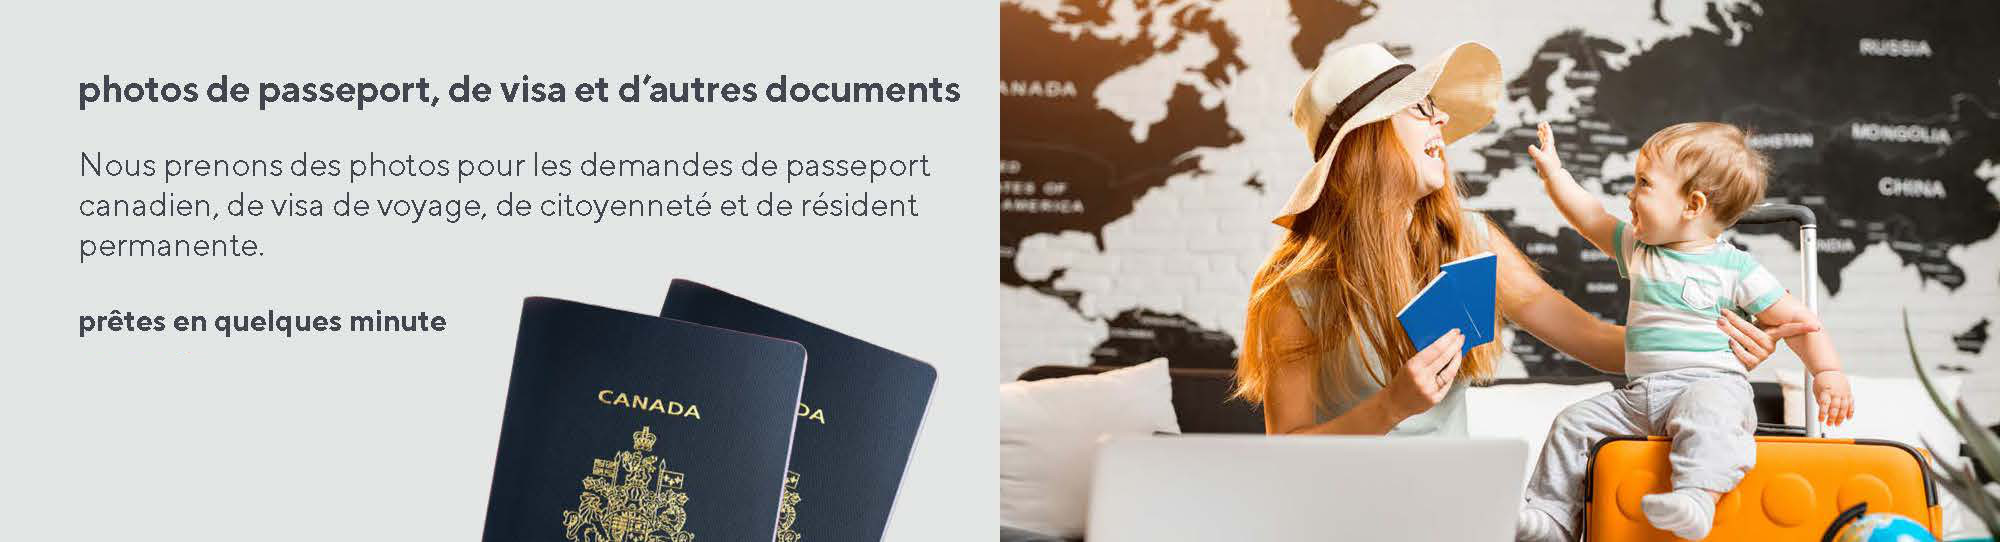 Photos de passeport, de visa et d’autres documents